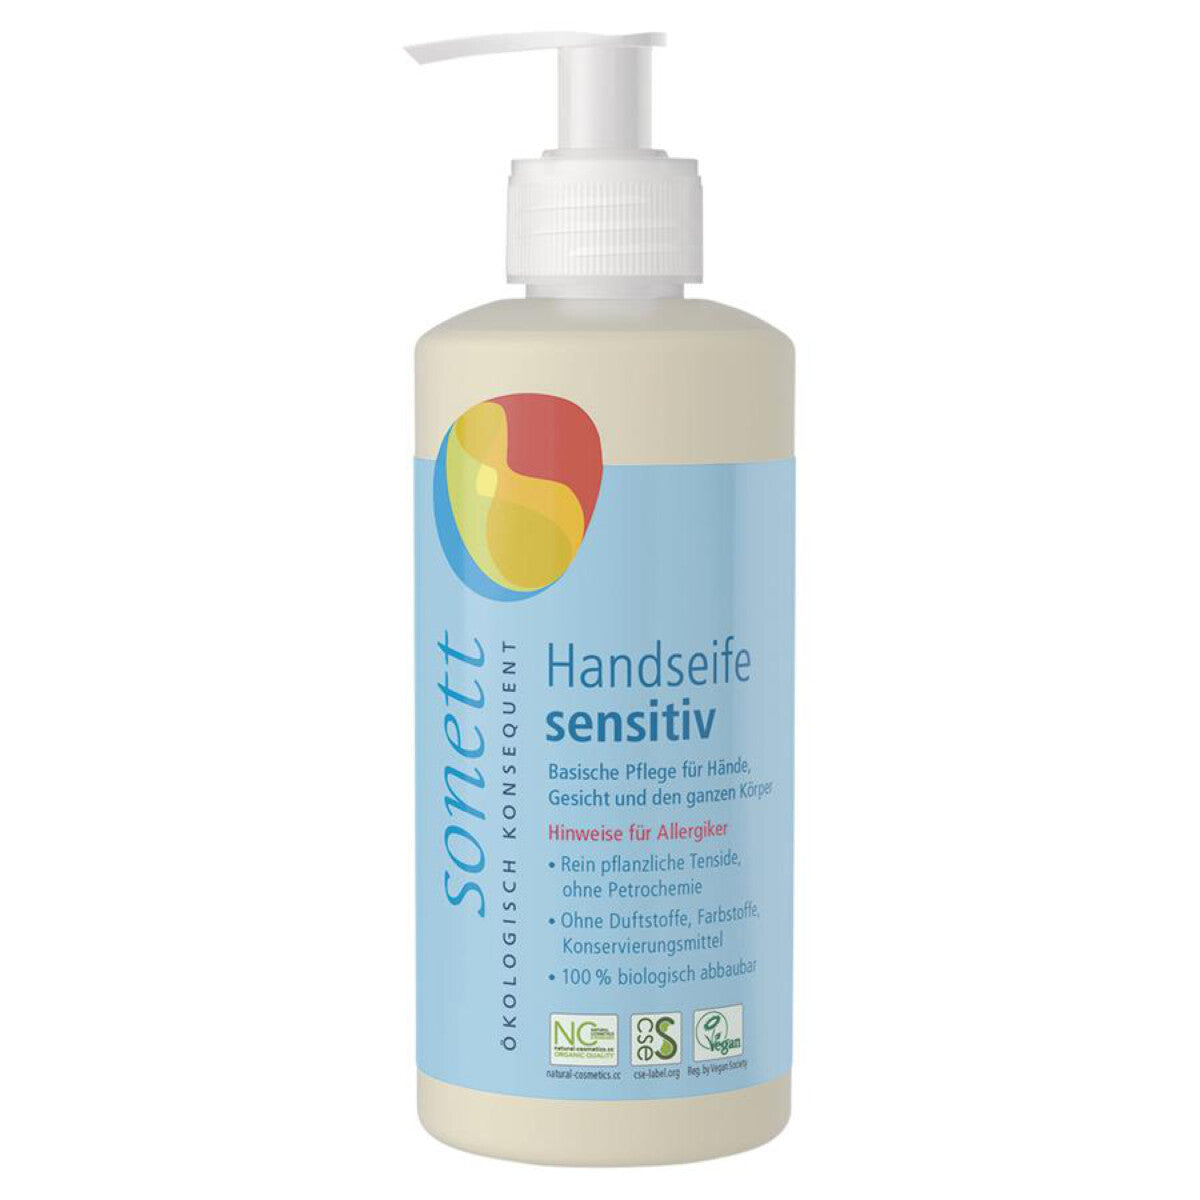 SONETT Handseife sensitiv im Spender - 300 ml